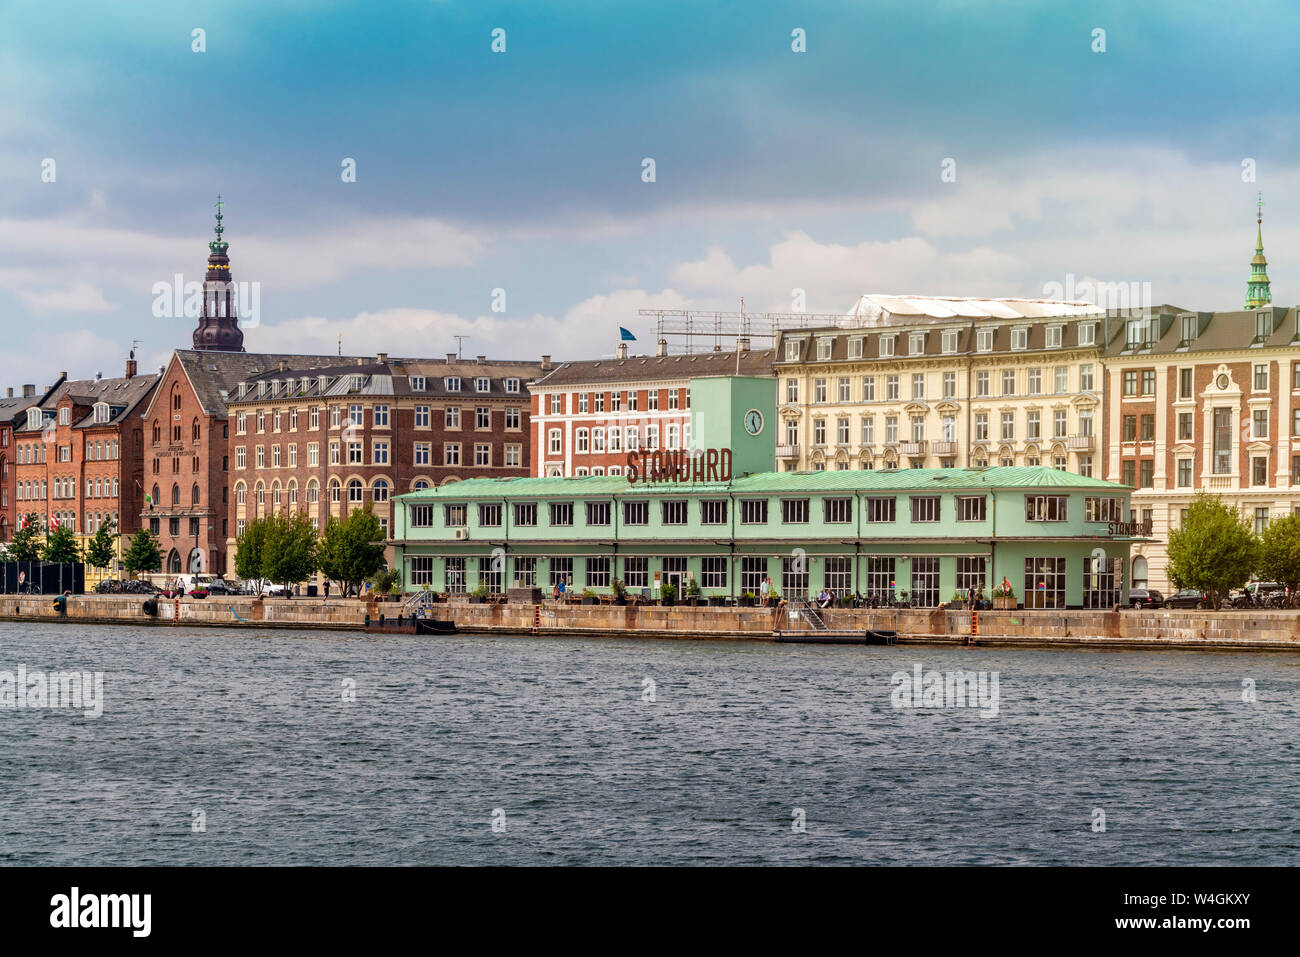 Havnegade with Havnepromenade and the Standard restaurant seen from Inderhavnbroen bridge, Copenhagen, Denmark Stock Photo